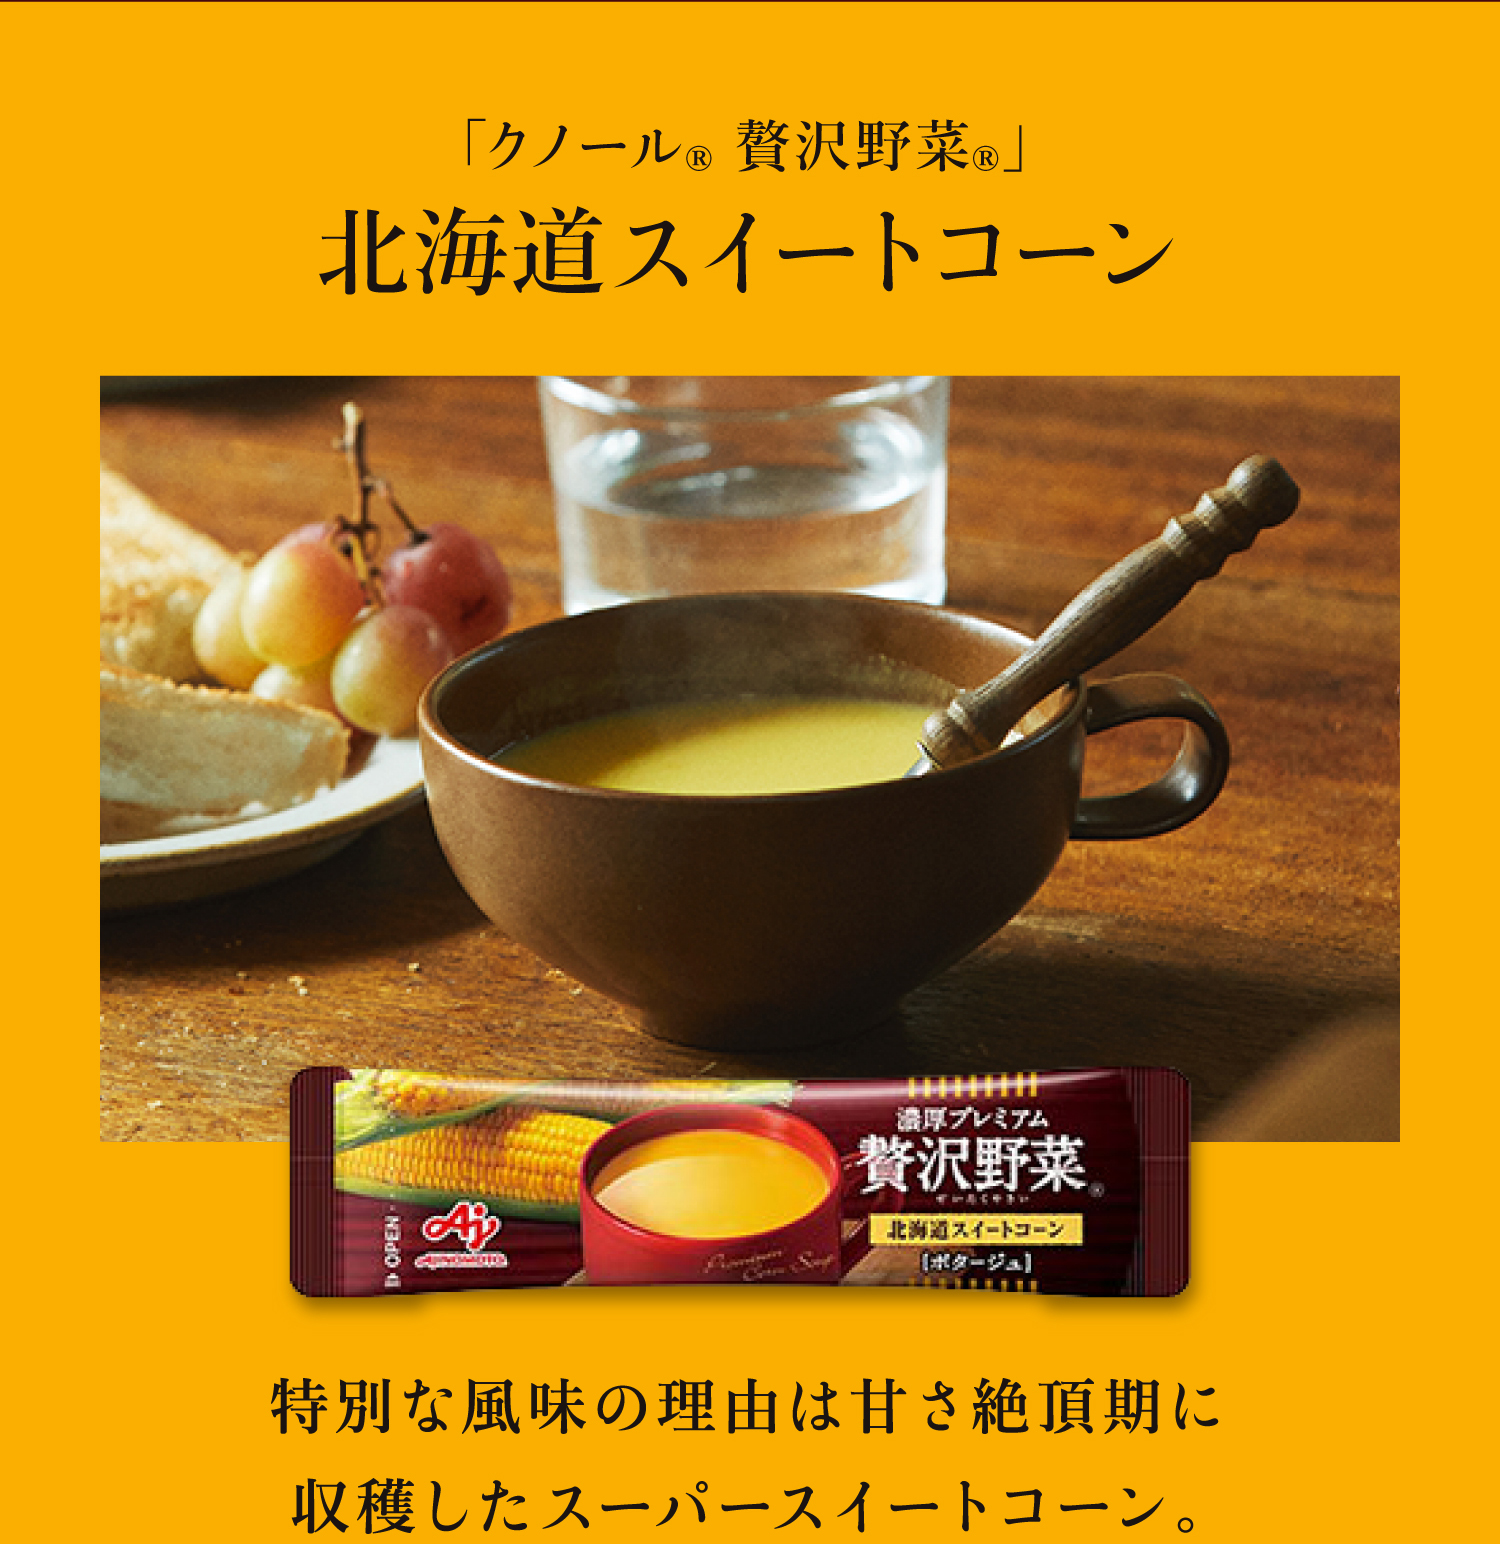 「クノール® 贅沢野菜®」 北海道スイートコーン 特別な風味の理由は甘さ絶頂期に収穫したスーパースイートコーン。